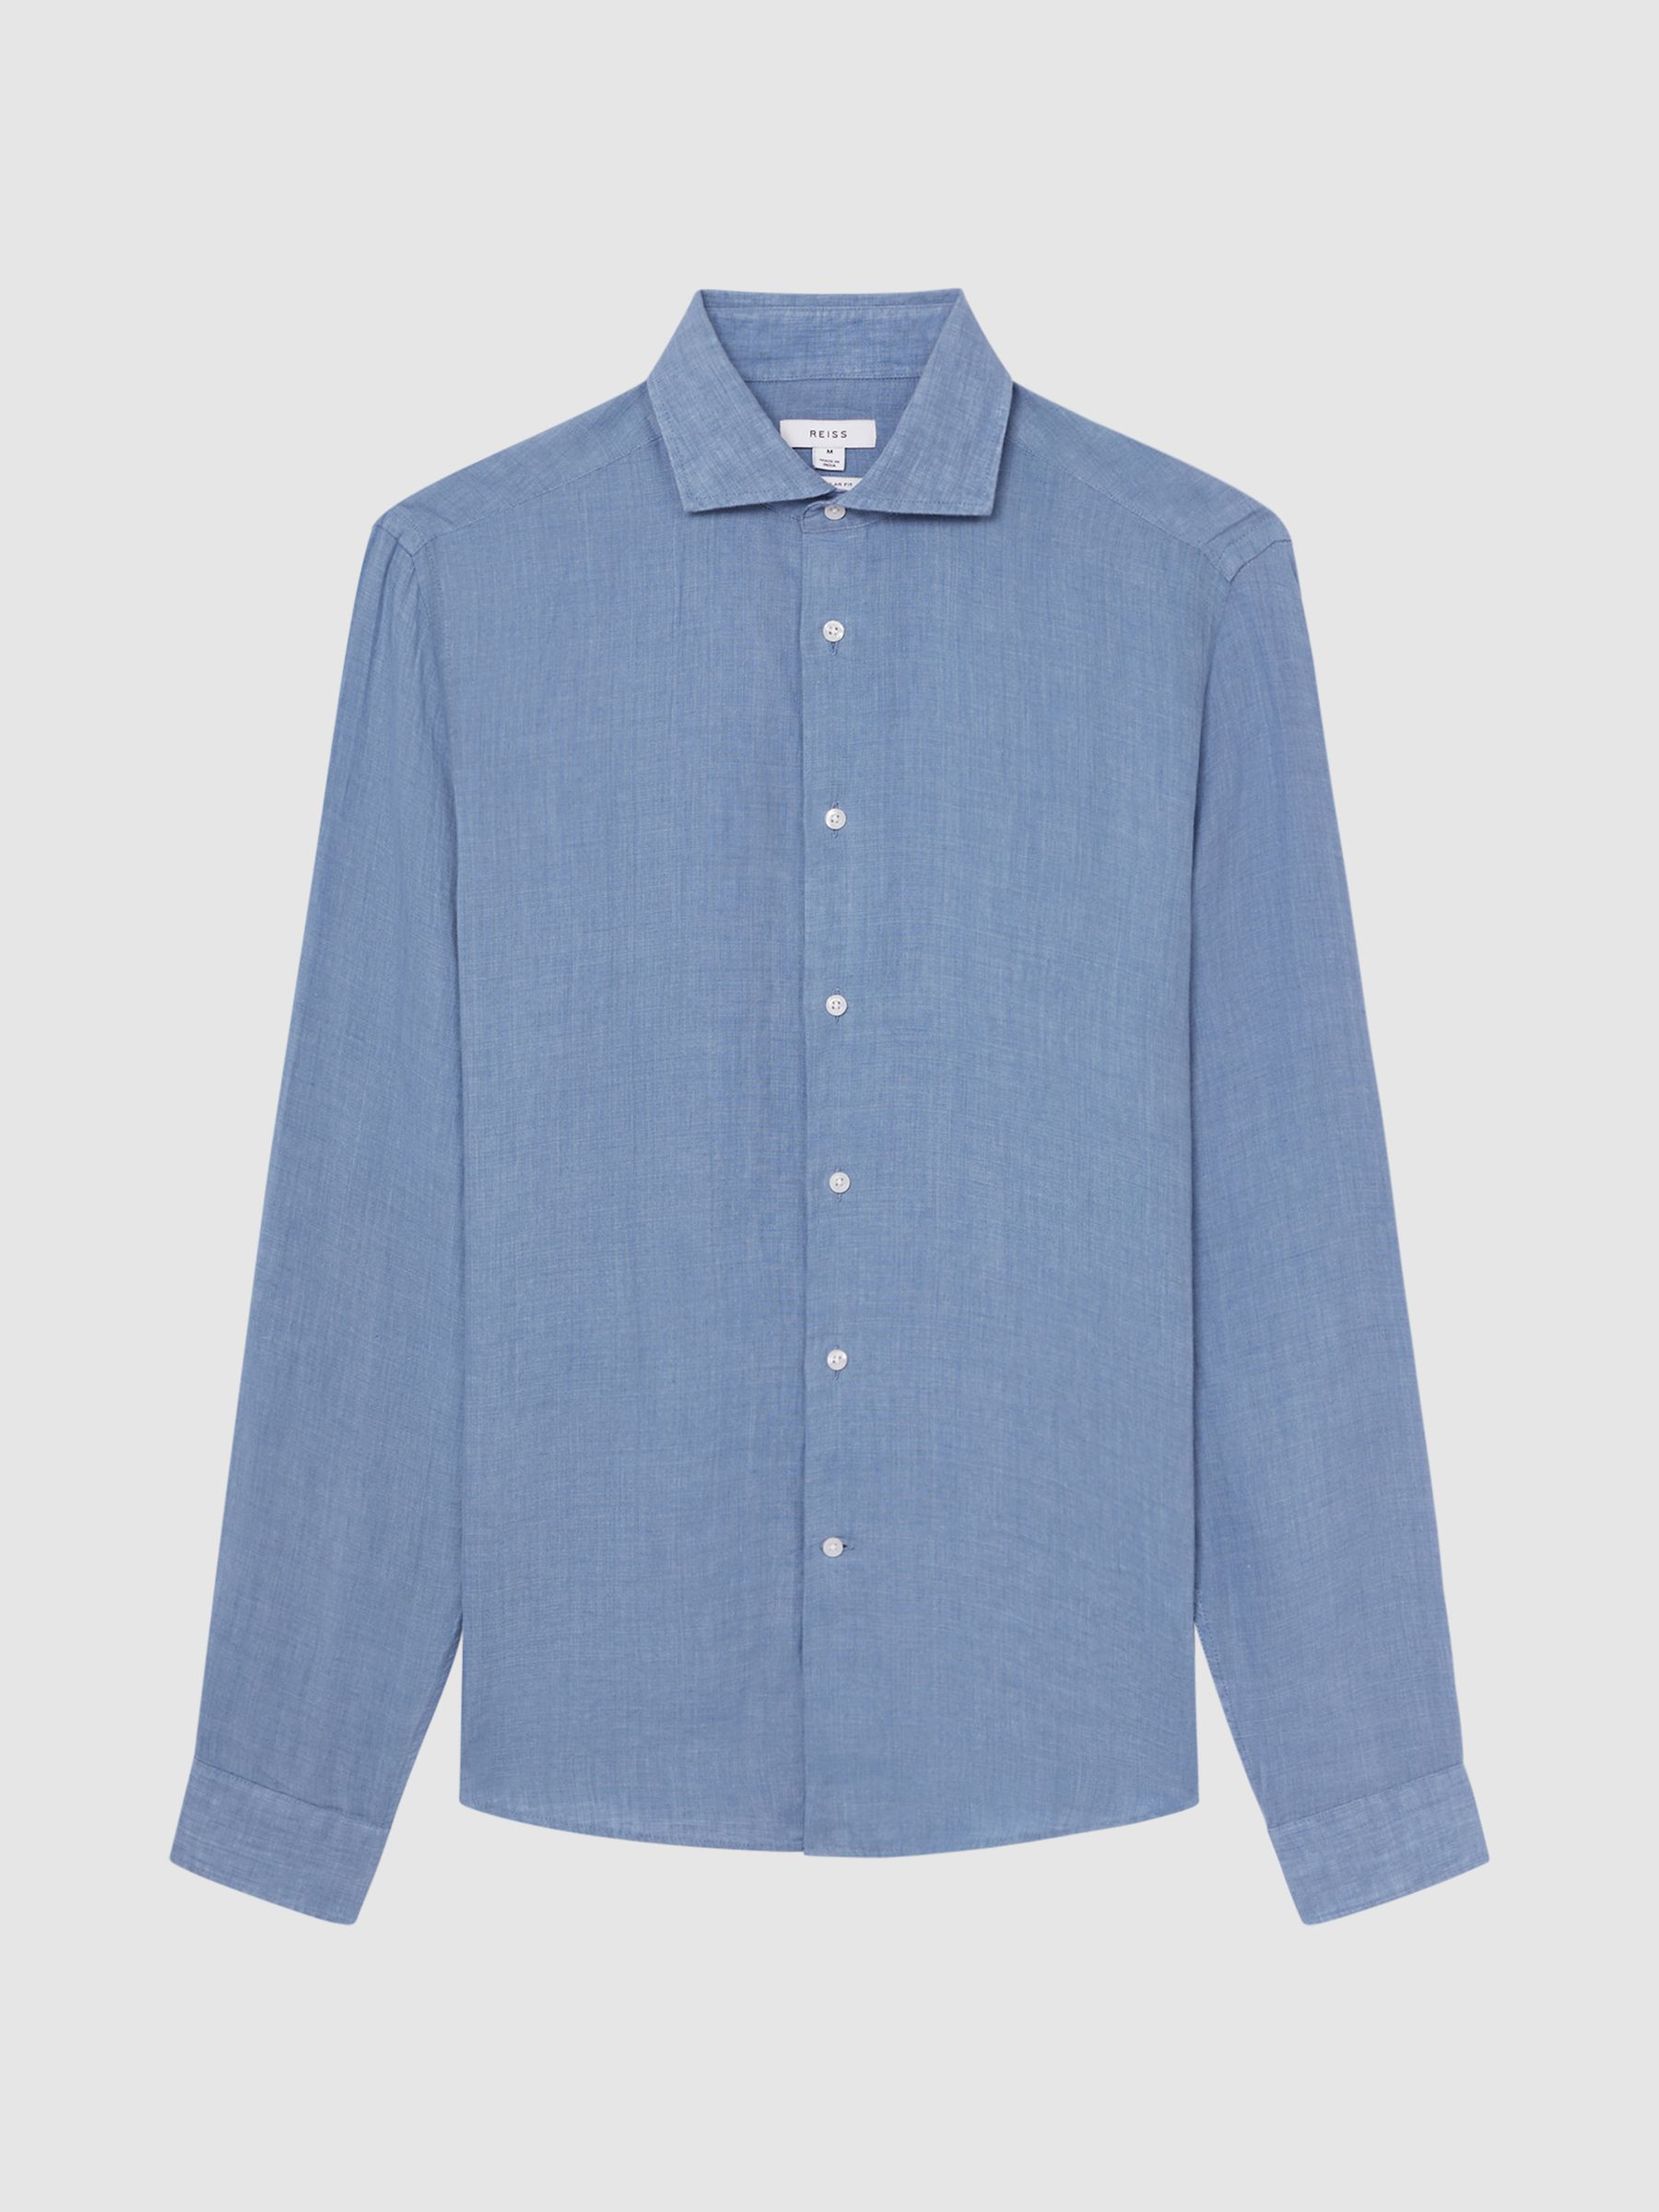 Reiss Ruban Linen Button Through Shirt - REISS